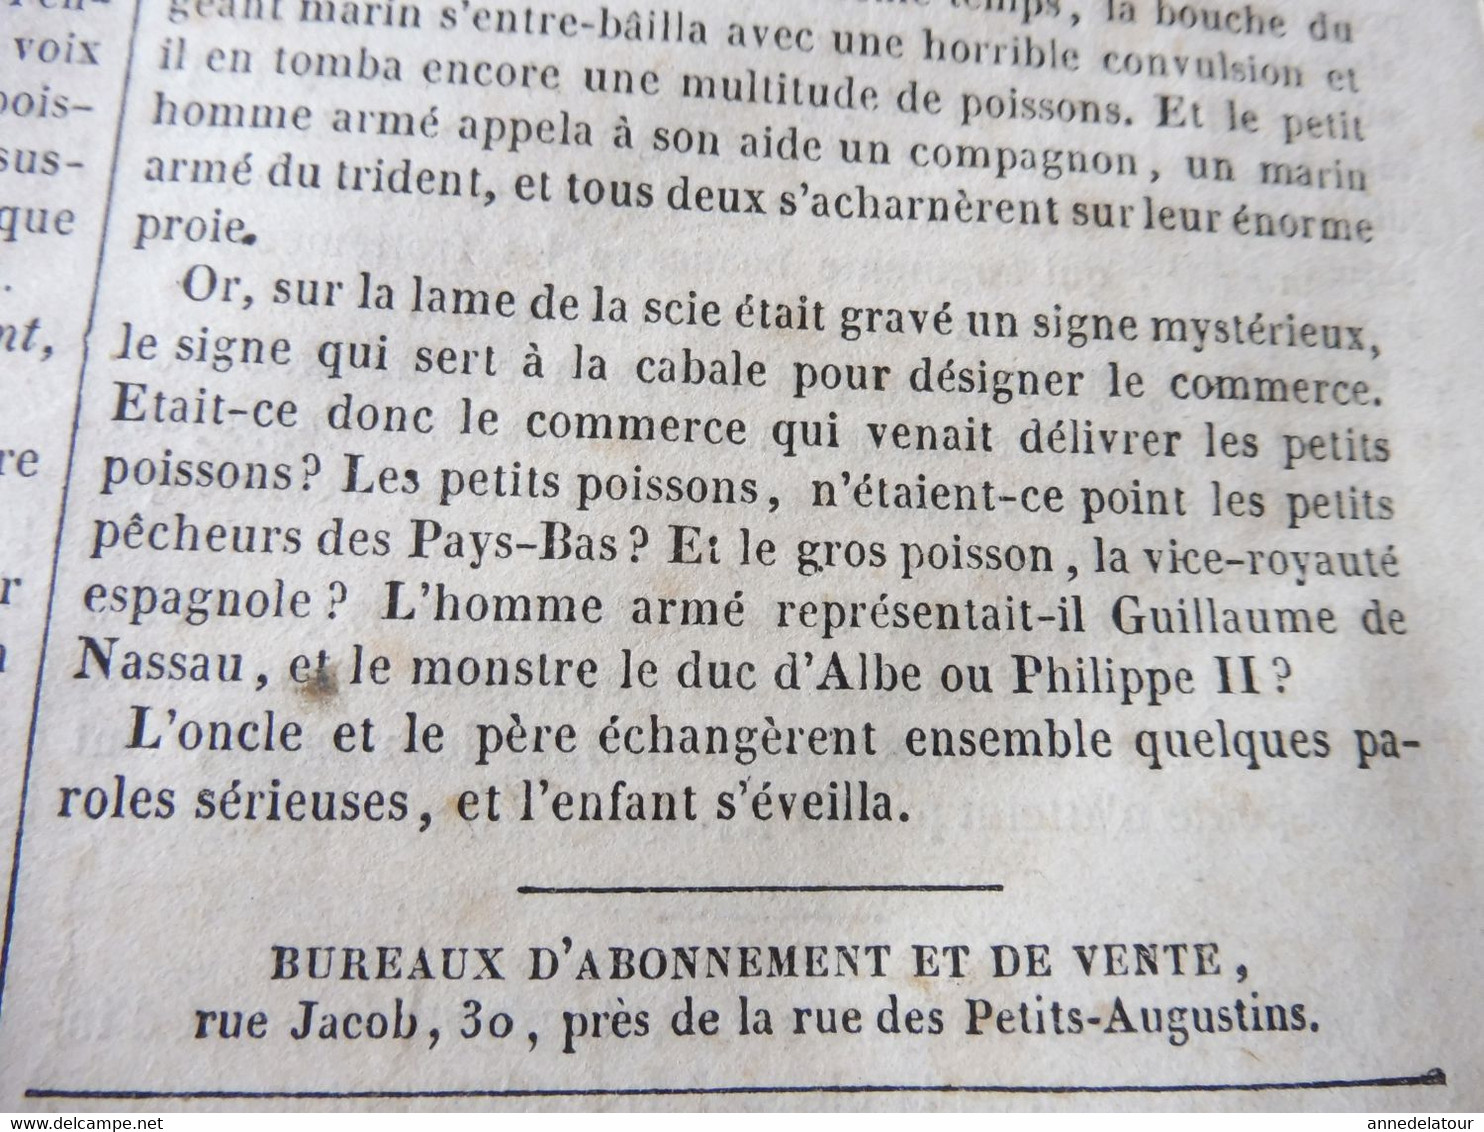 1839 MP Chevaliers de MALTE (les costumes) ; Les gros poissons mangent les petits poissons (gravure symbolique)